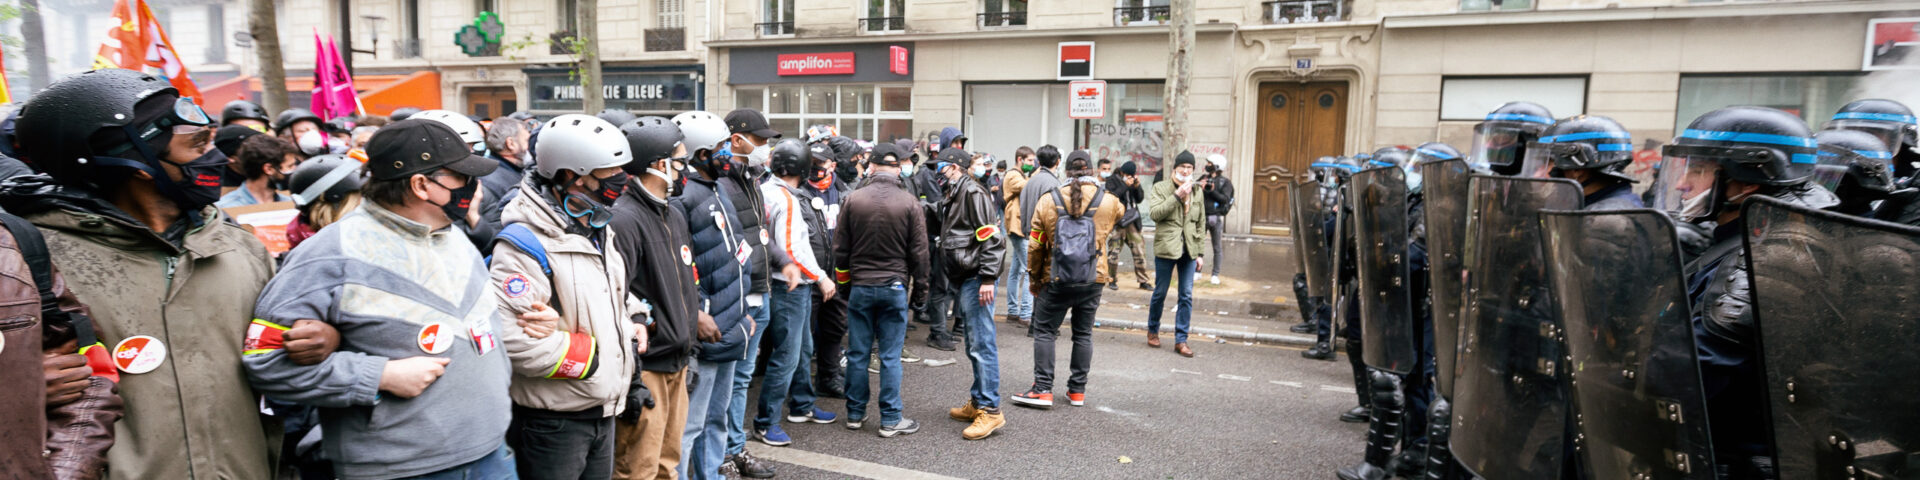 Un tete a tete entre la police et le service d ordre de la CGT. Manifestation parisienne du premier mai.